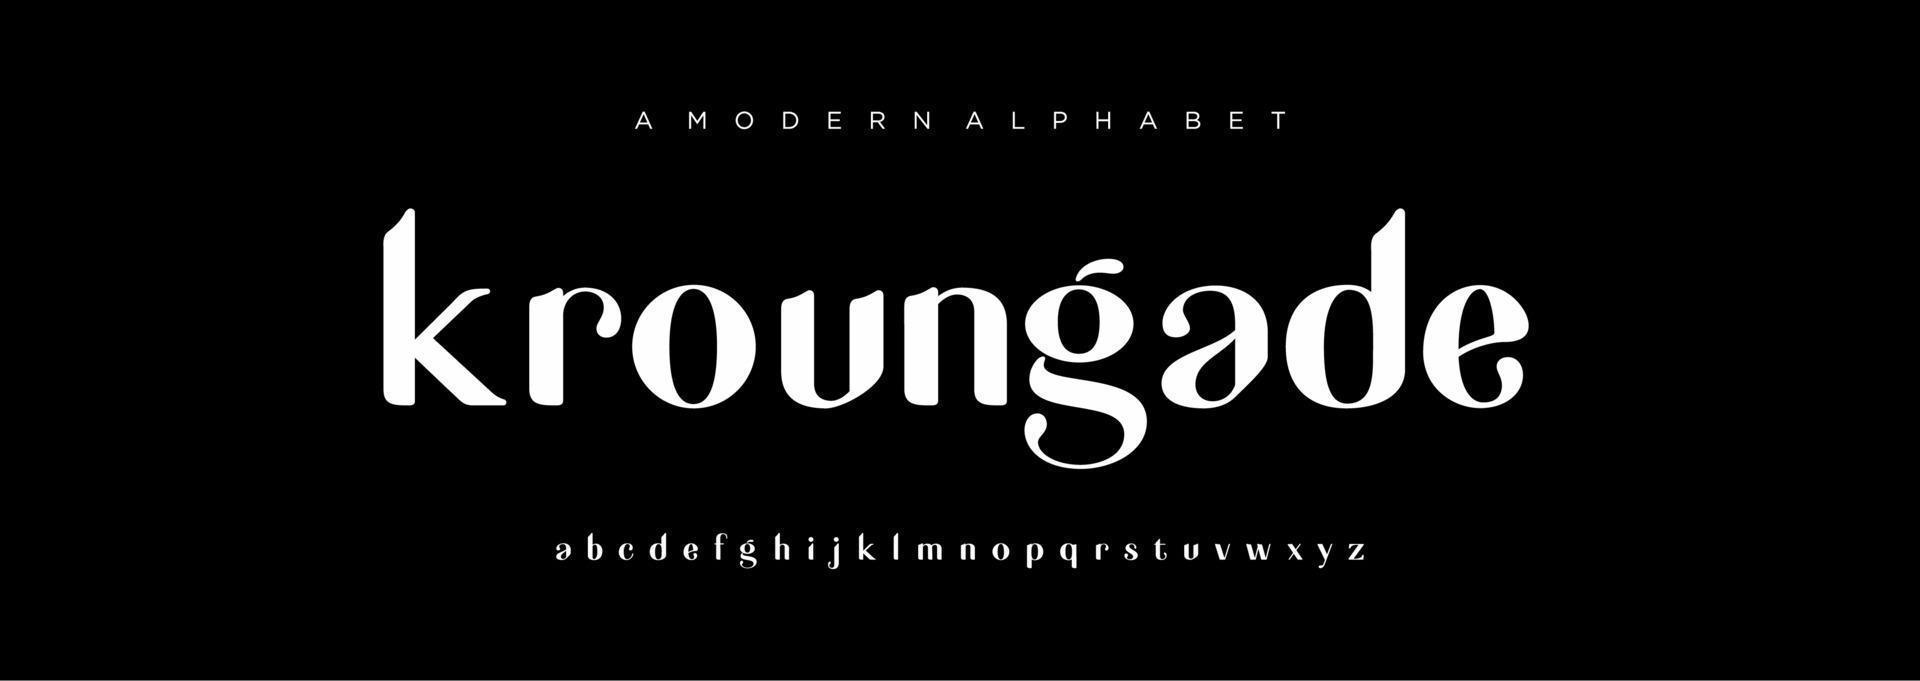 alfabeto lettere font elegante eccezionale vettore